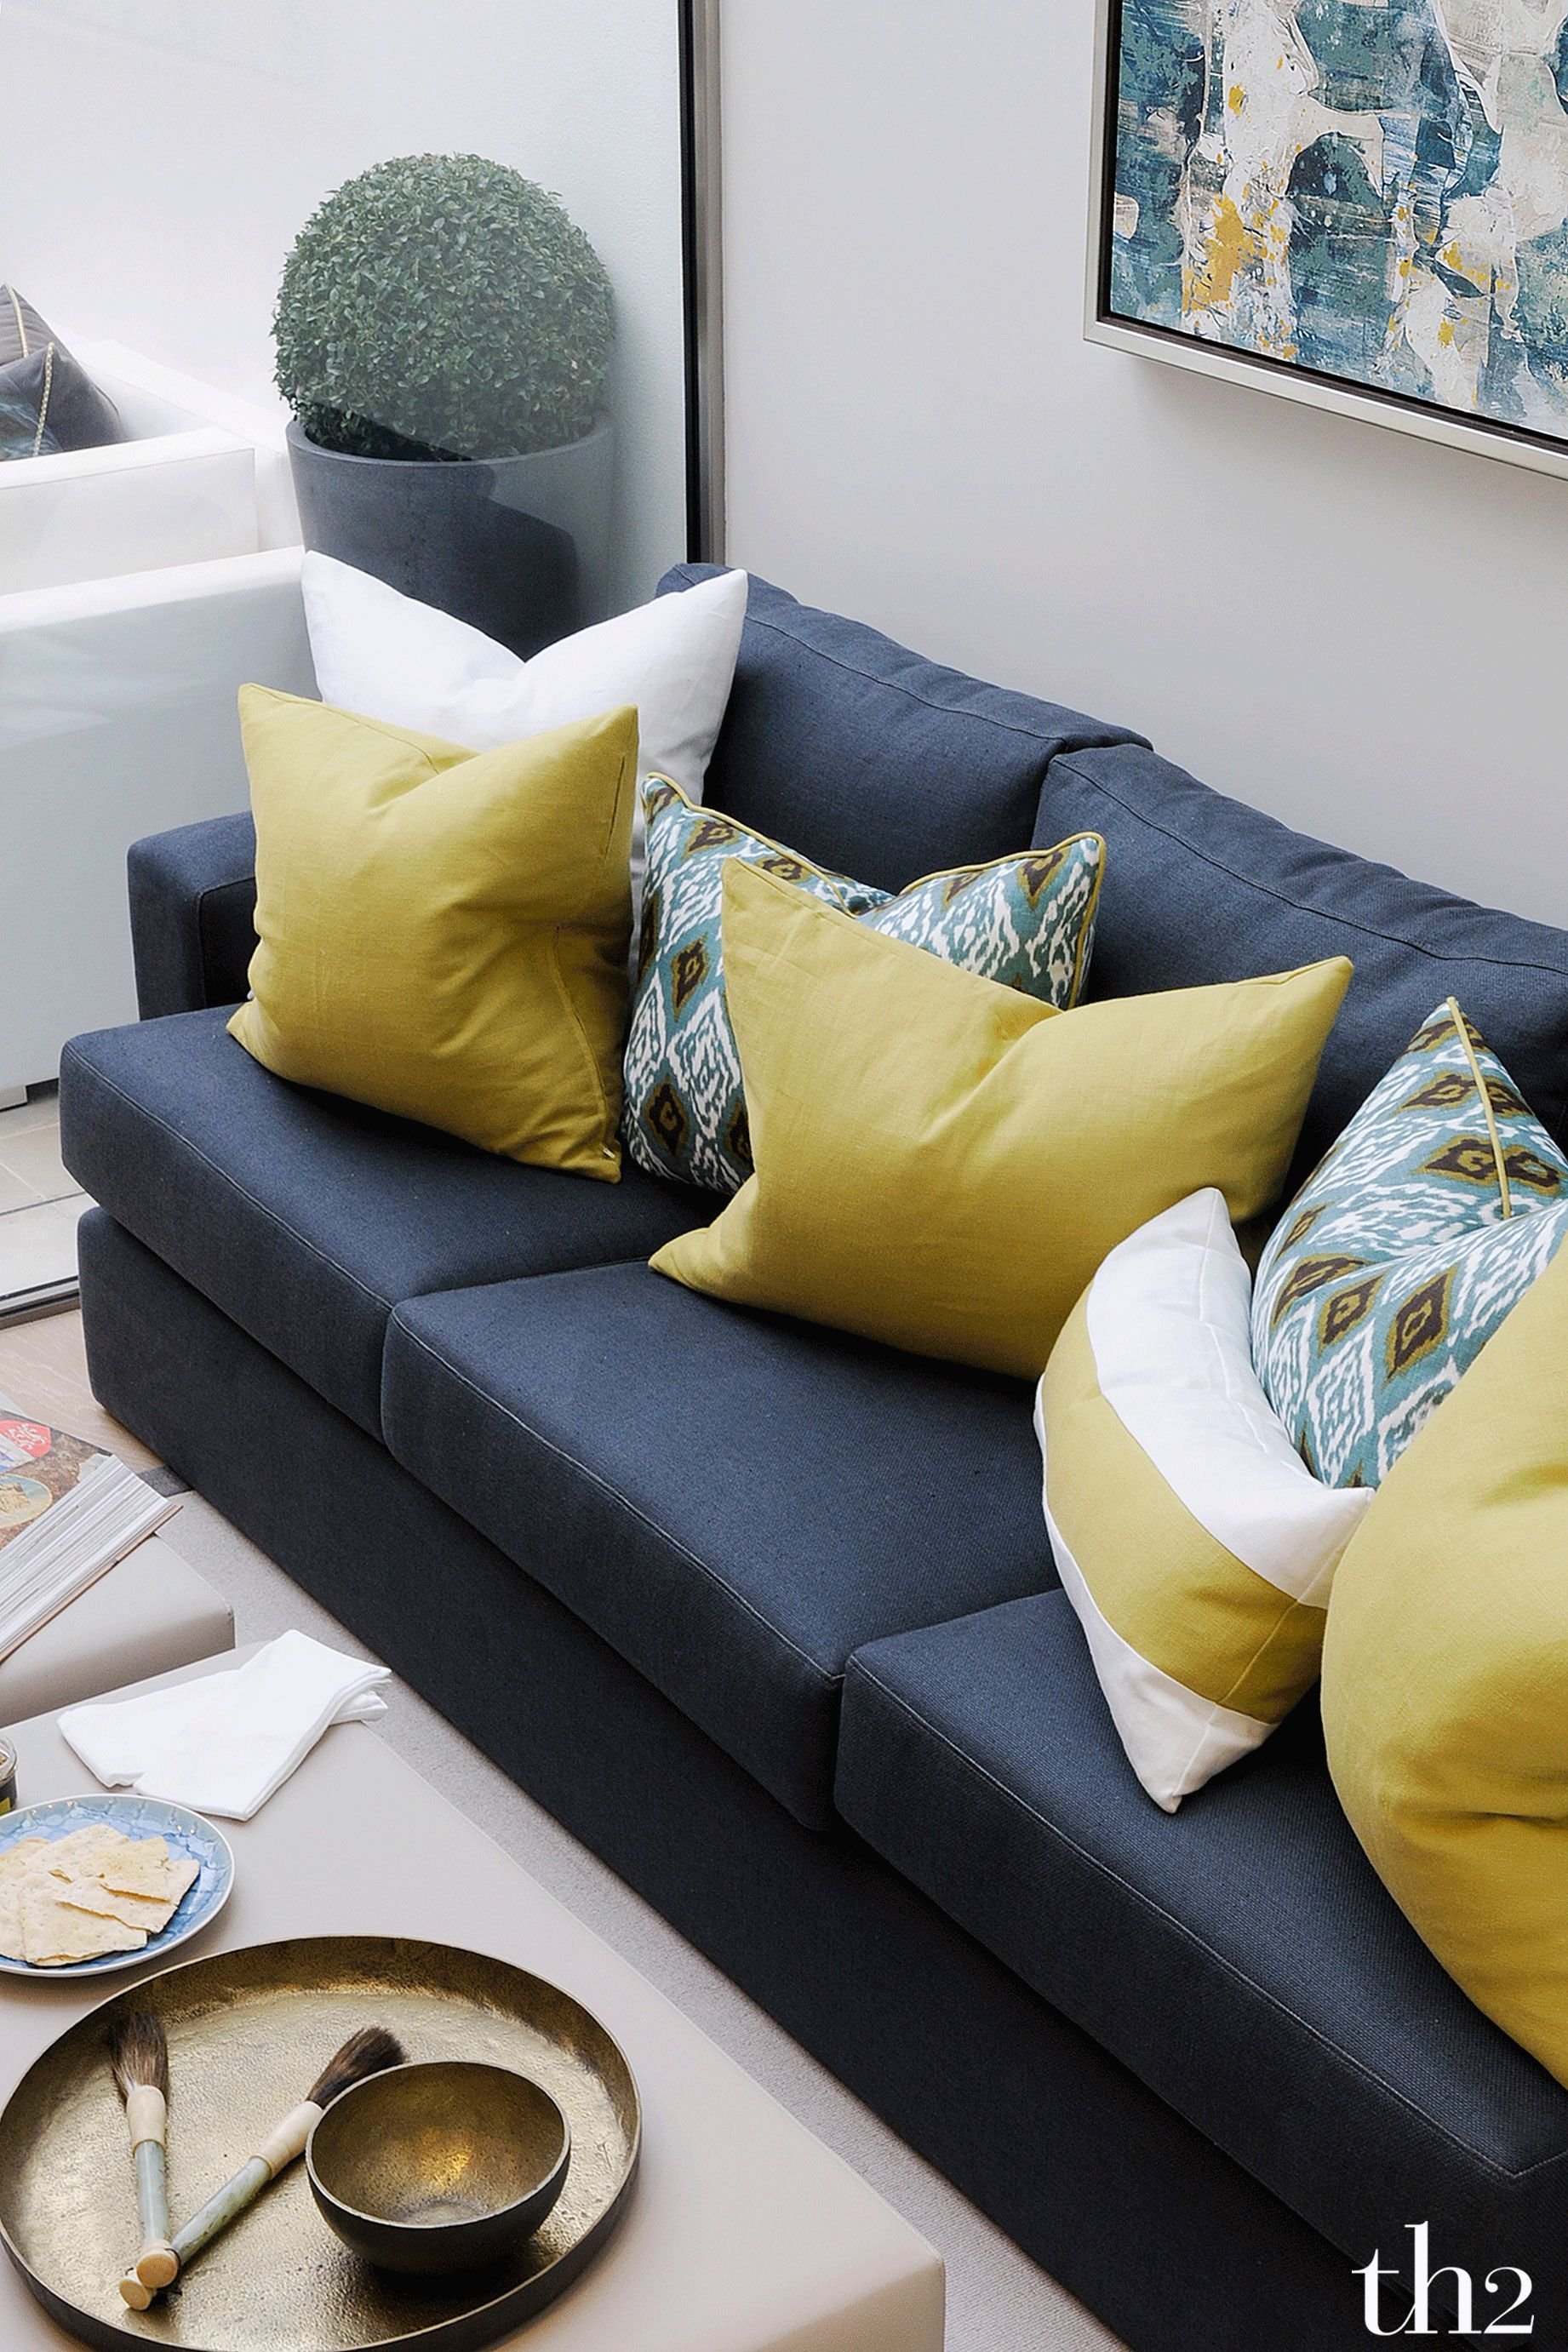 Фото дивана с подушками. Яркие подушки в интерьере. Декоративные подушки на серый диван. Цветные подушки в интерьере. Подушки в интерьере гостиной.